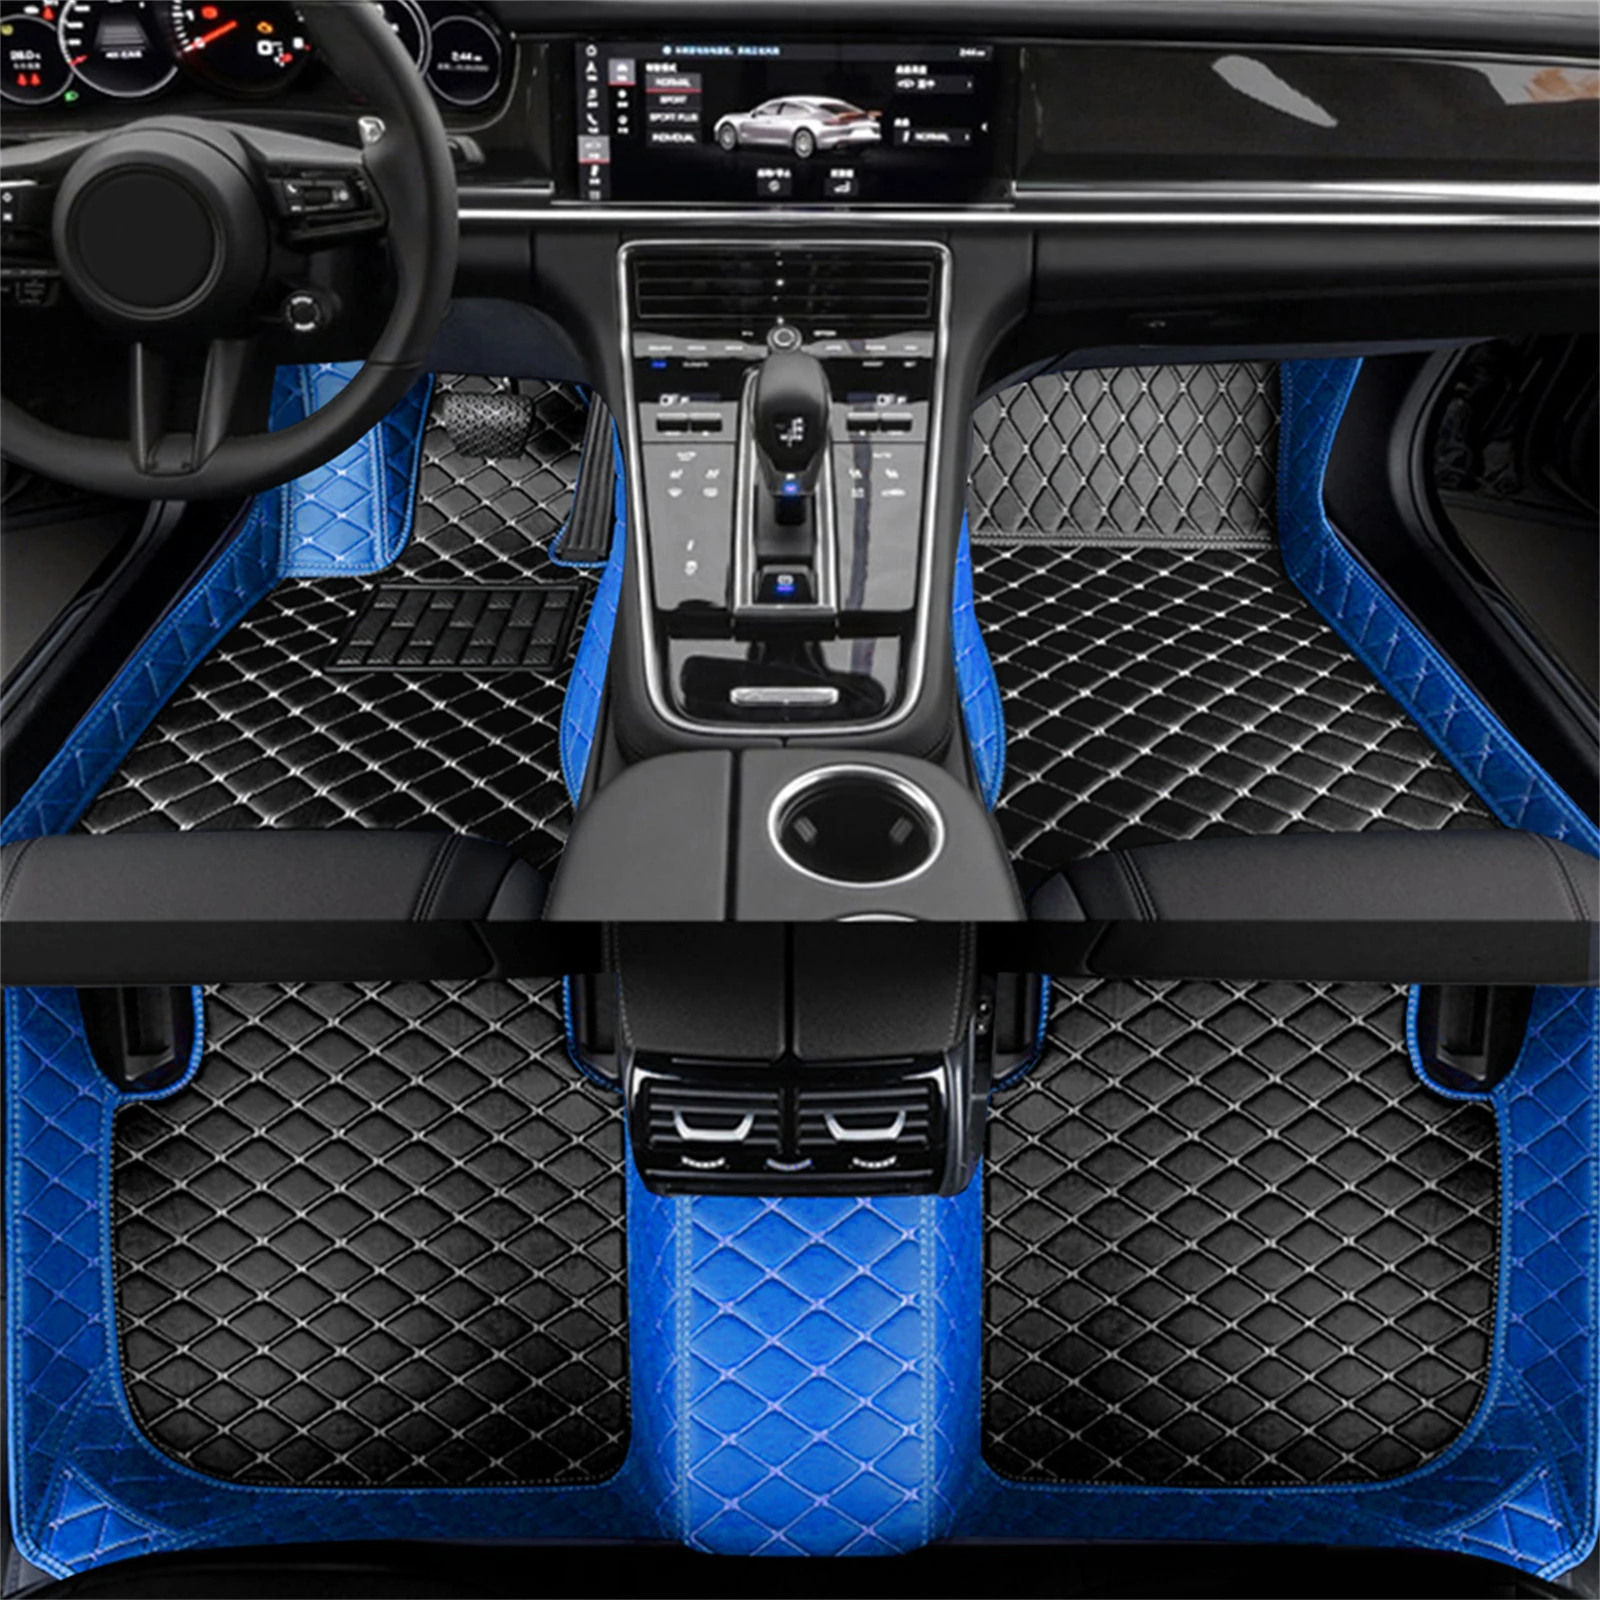 Custom Leather Car Floor Mats For Ford Fusion Taurus Ranger Focus Ranger Taurus Non-slip Carpet Car Interior Accessories